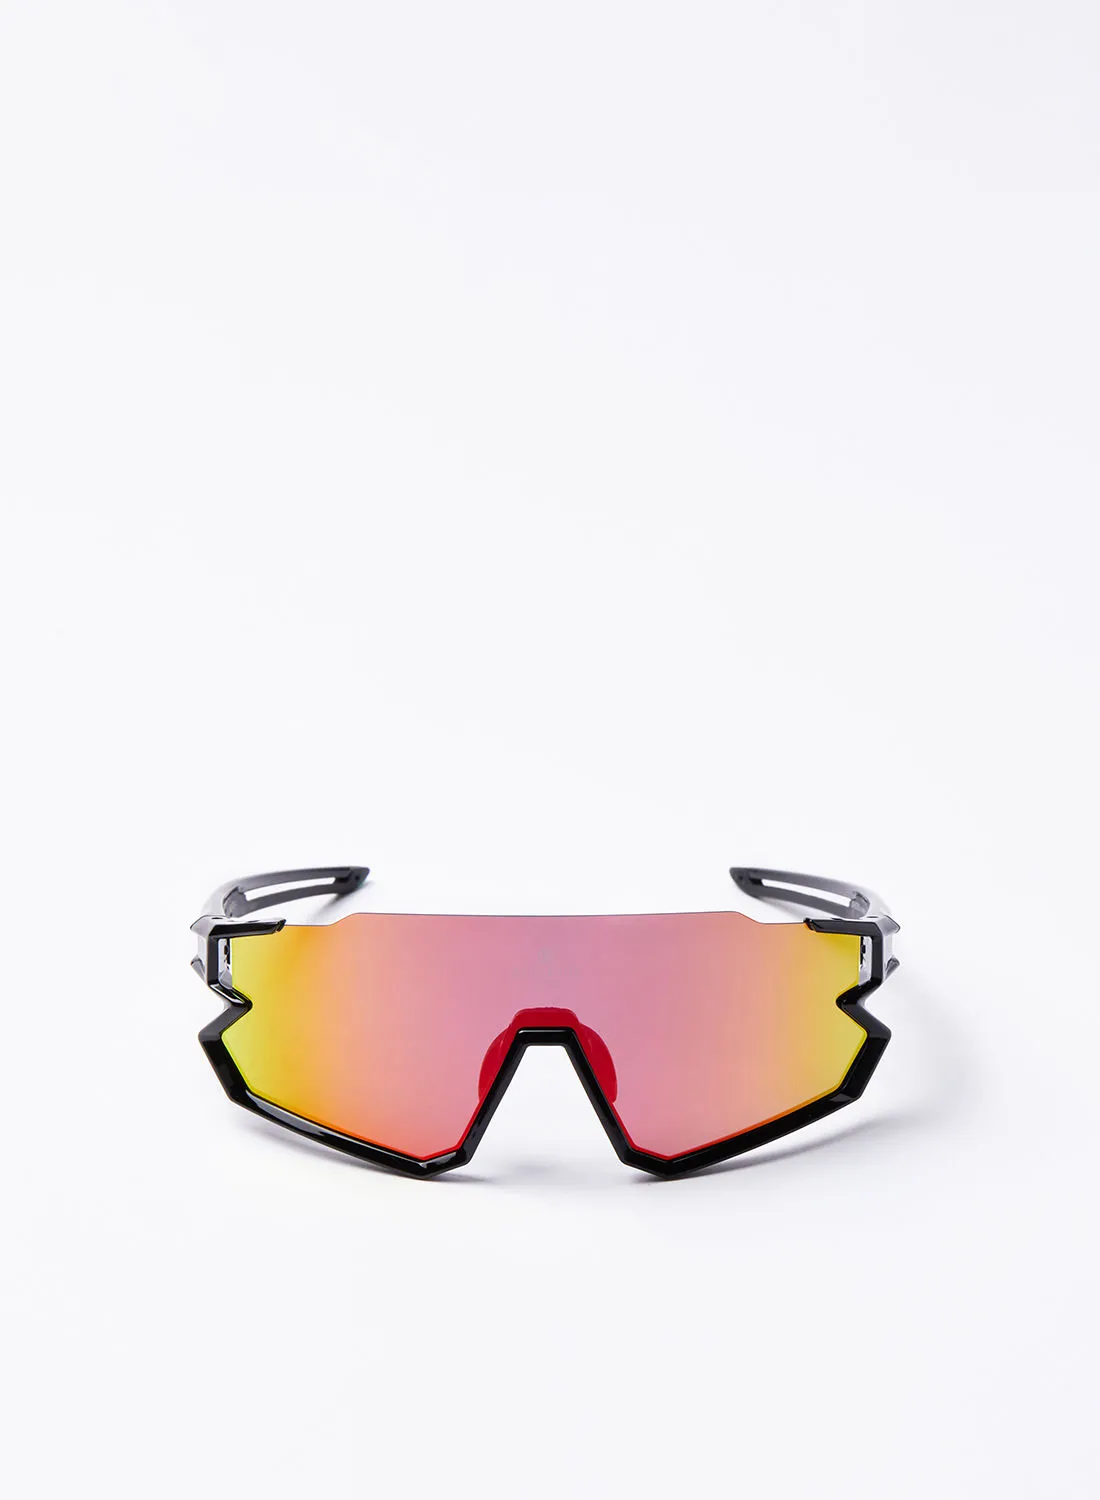 نظارة شمسية رياضية بعجلات السكوتر - Athletiq Club جبل جيس - إطار أسود مع عدسة متعددة الطبقات باللون الأحمر